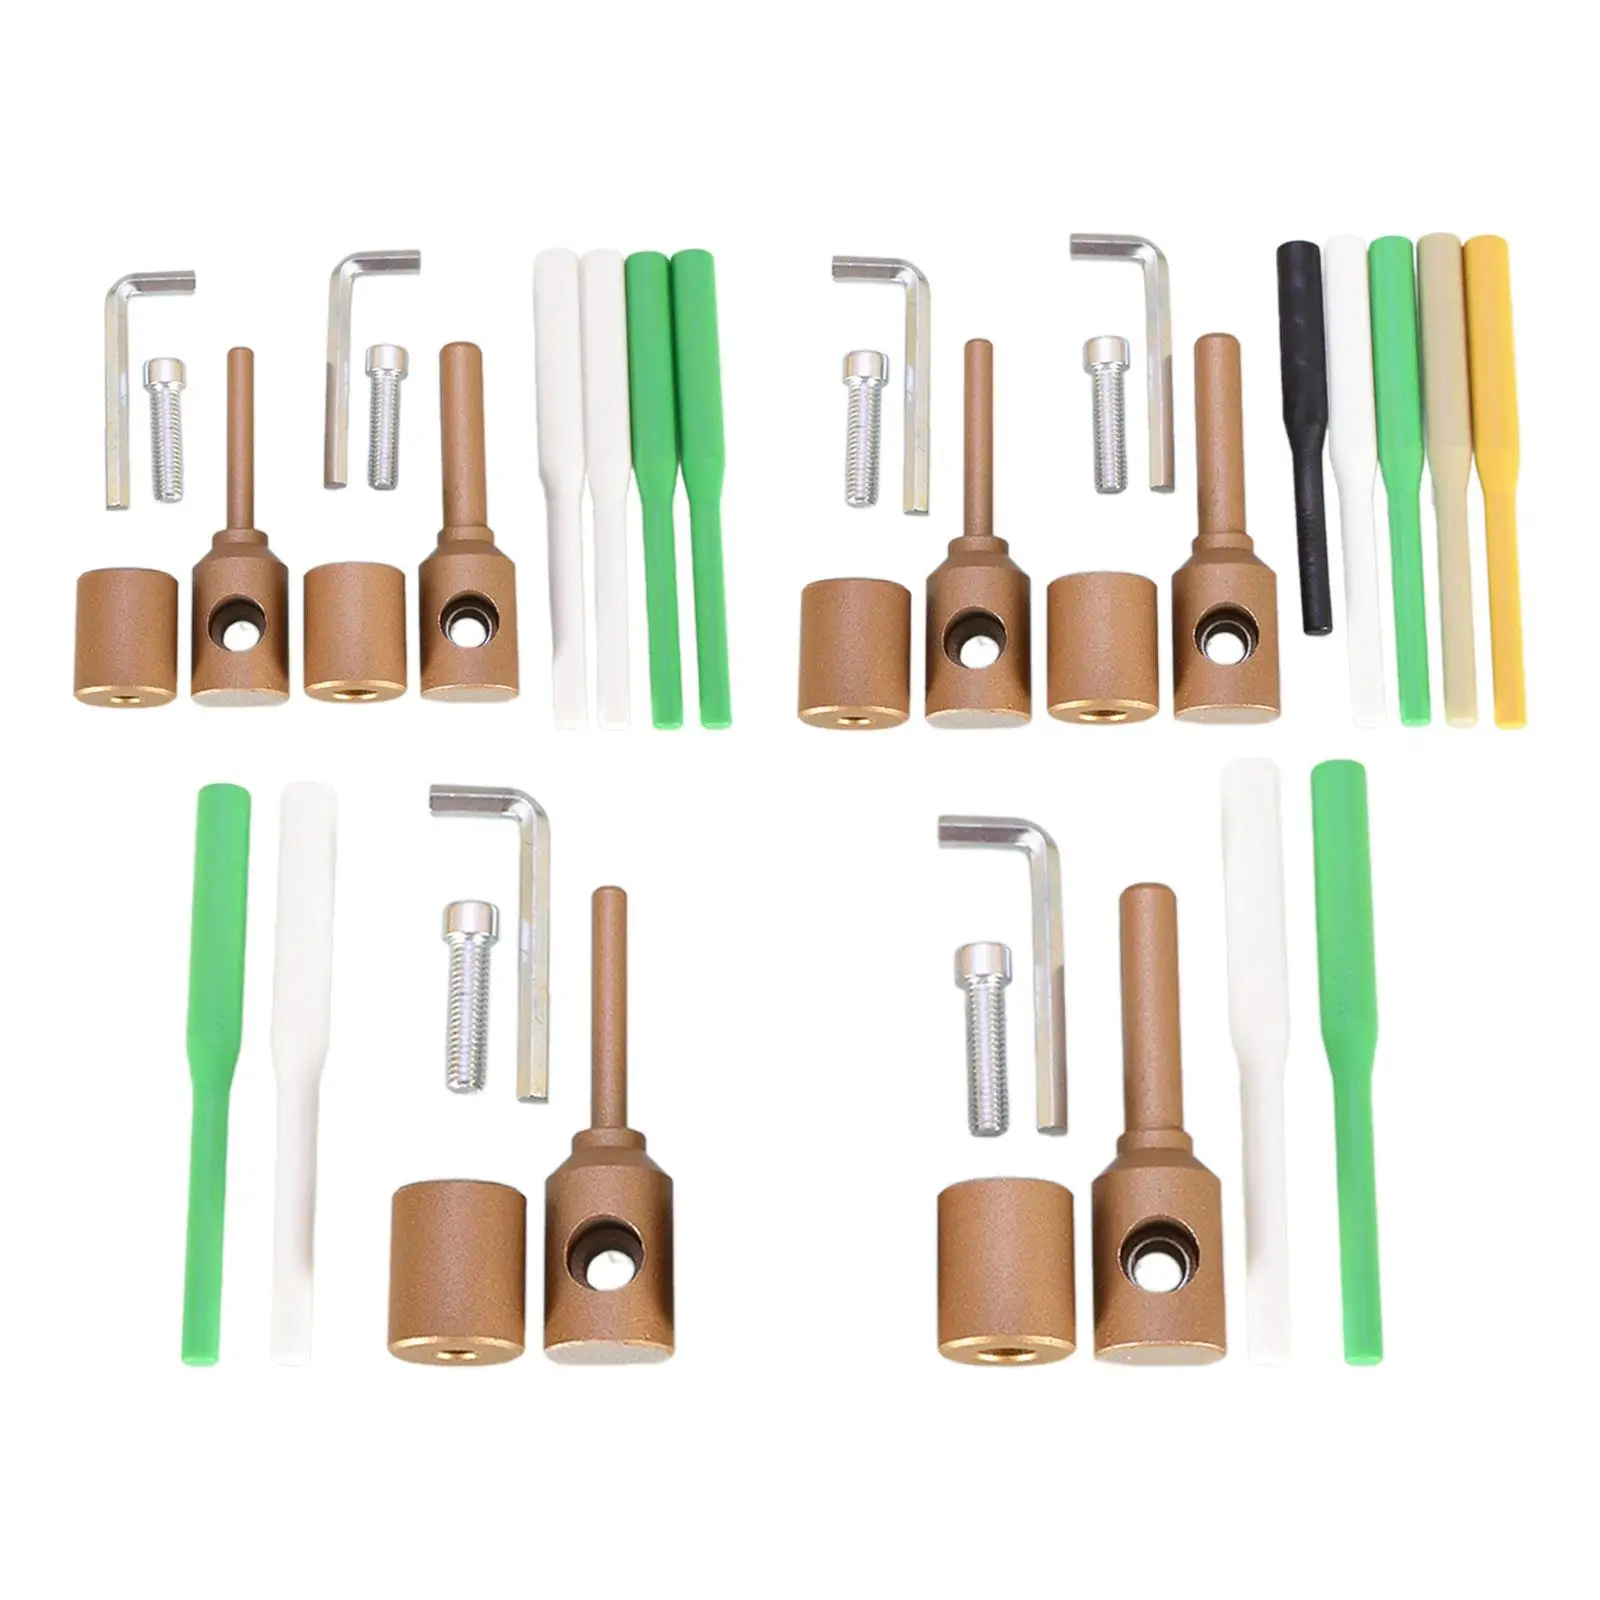 

Die Heads Equipment Water Pipe Welder Tool Ppr Hole Leak Repair Kit Repair Rods for Bathroom Home Kitchen Washroom Garden Hose